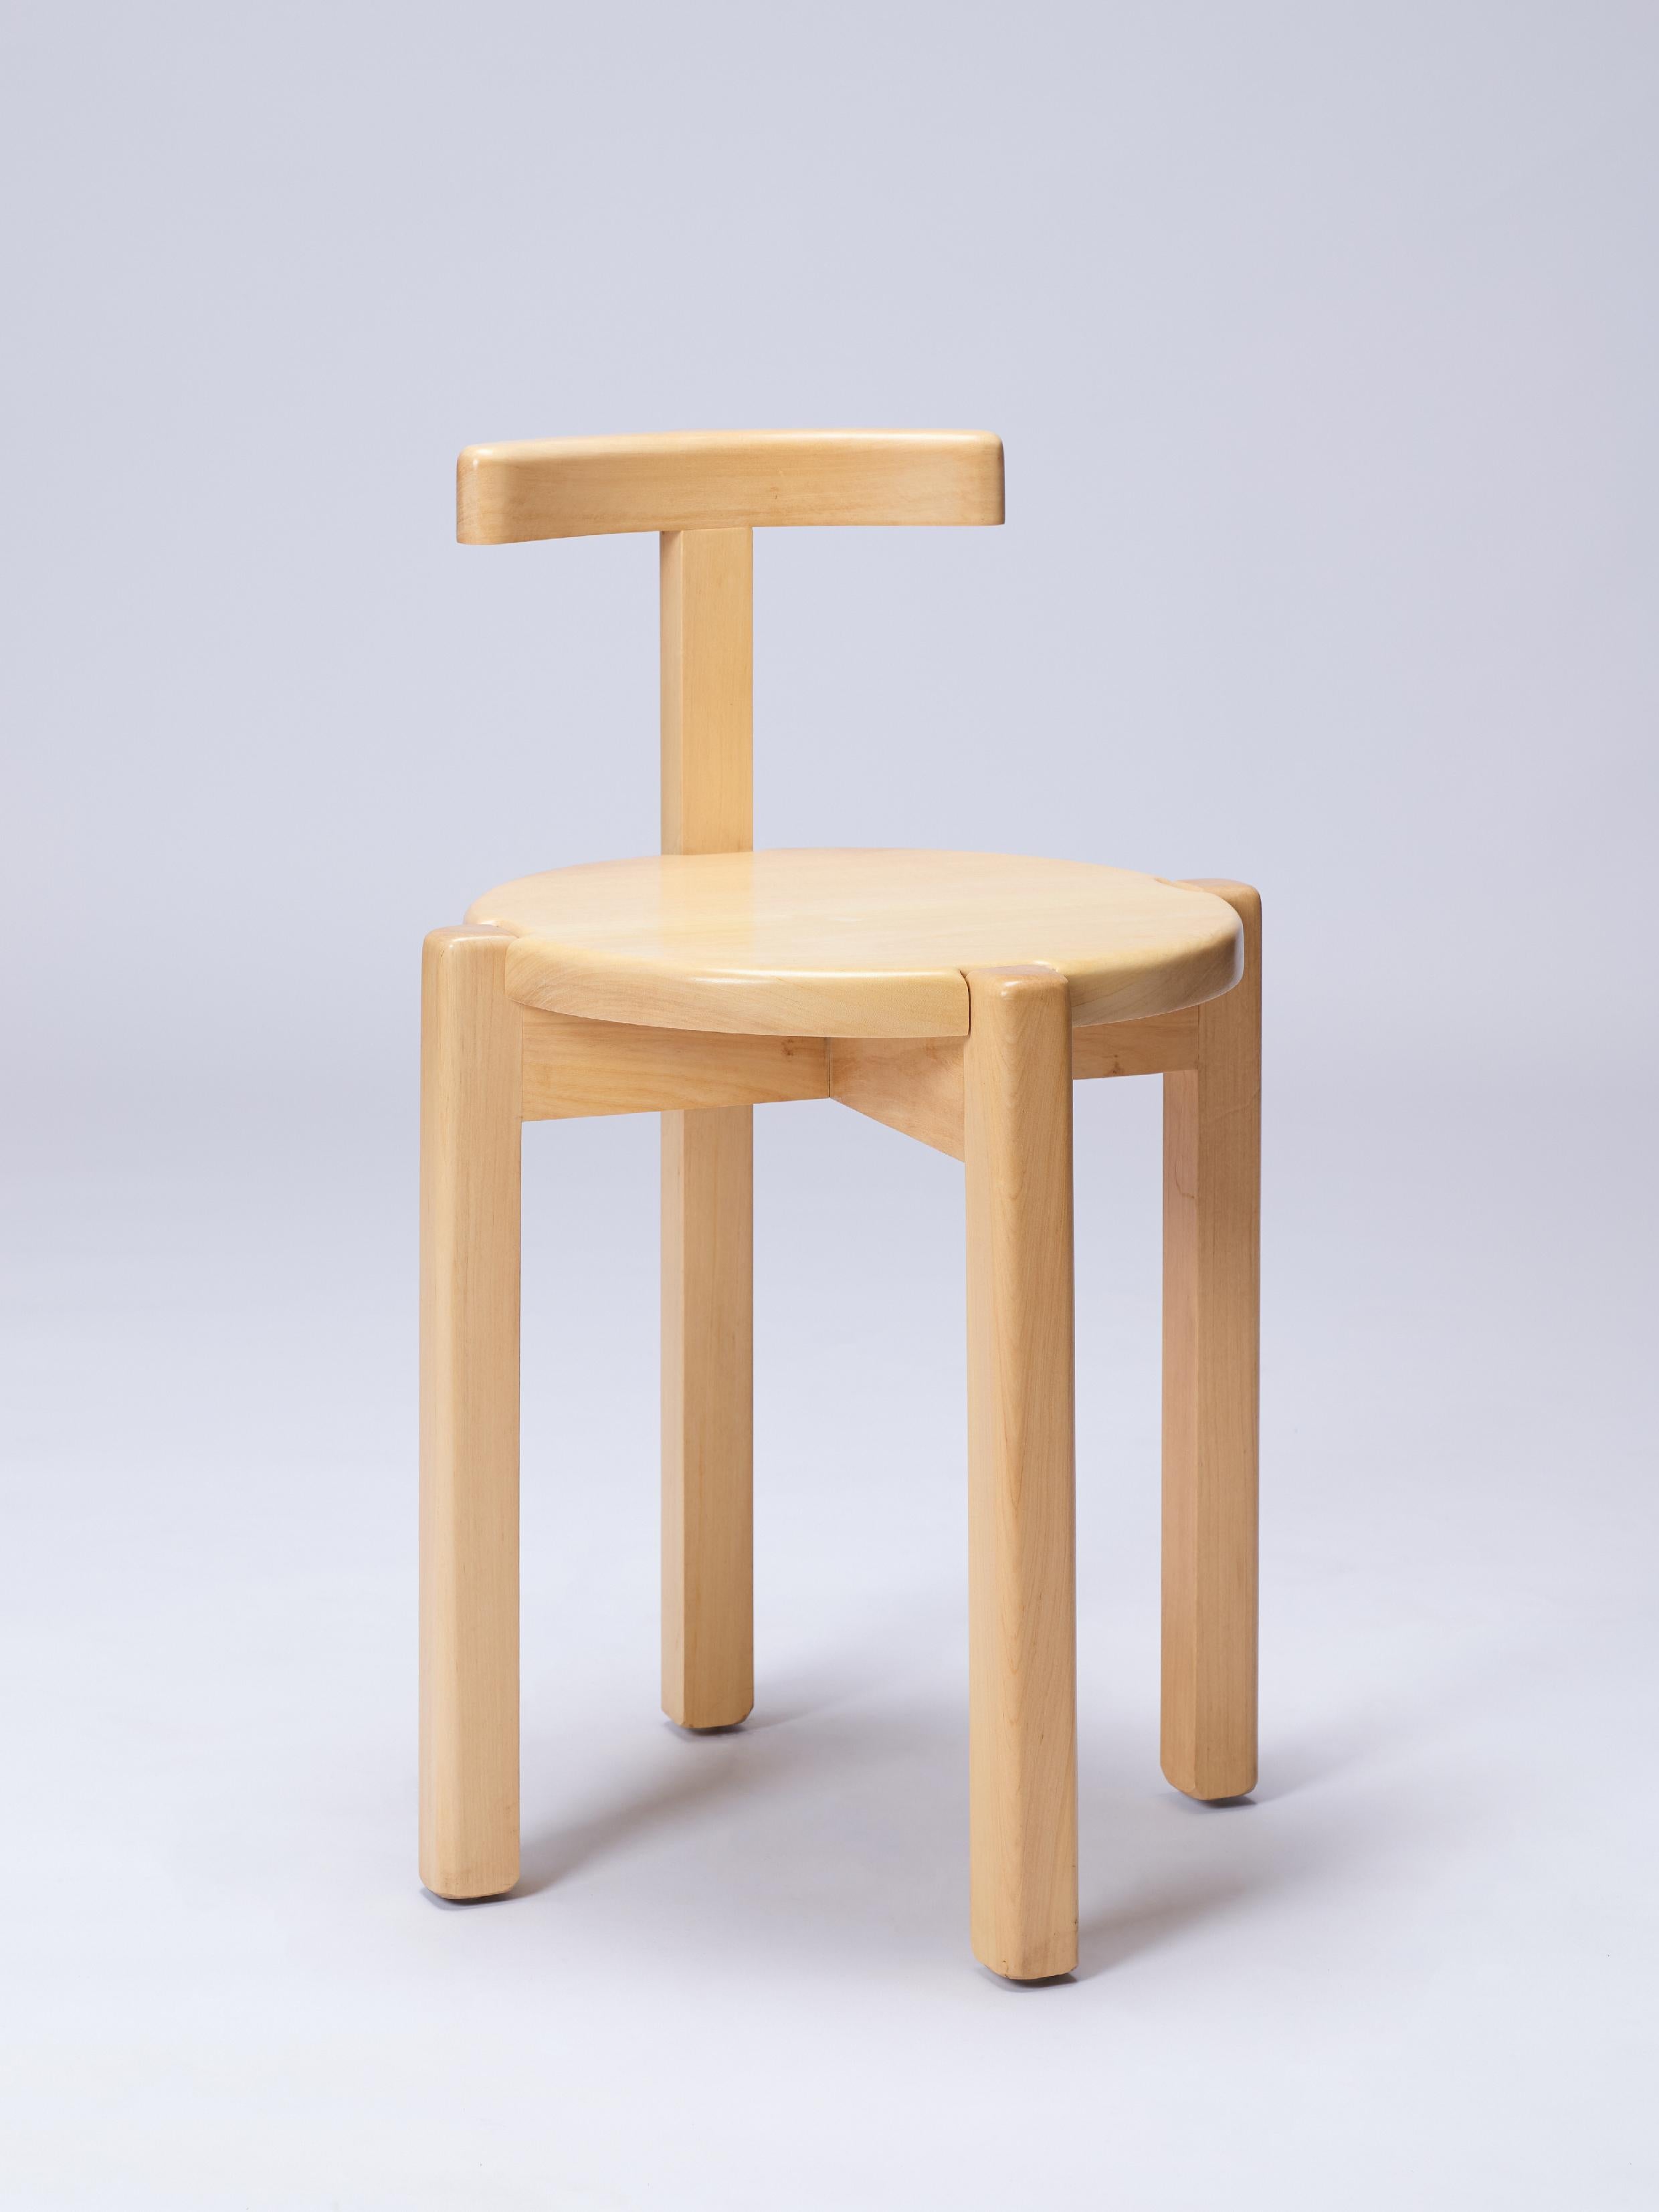 Der Orno-Stuhl ist Teil der Orno-Kollektion, unserer ersten Kollektion, die vollständig aus Hartholz besteht. Alle Stücke wurden nach demselben Konstruktionssystem entworfen, das aus grundlegenden Strukturelementen - Säulen, Balken, Stützebenen -